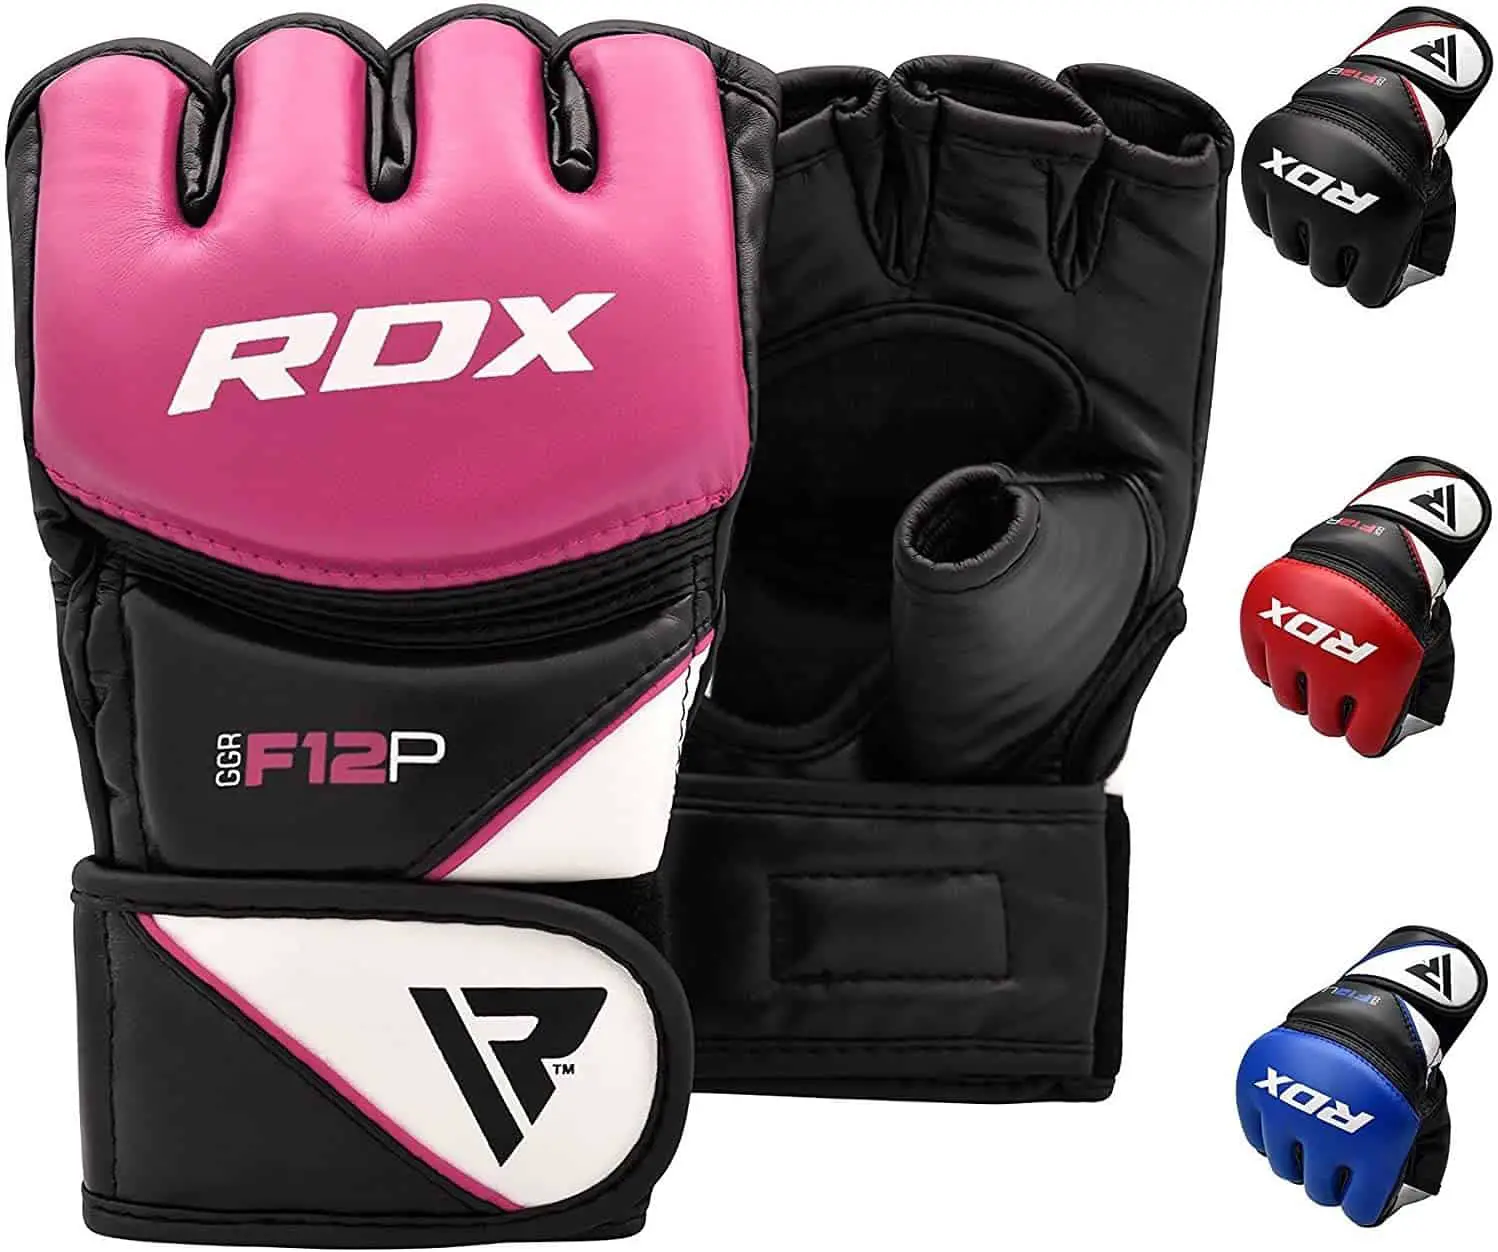 Beste MMA handschoenen voor de bokszak: RDX Maya F12